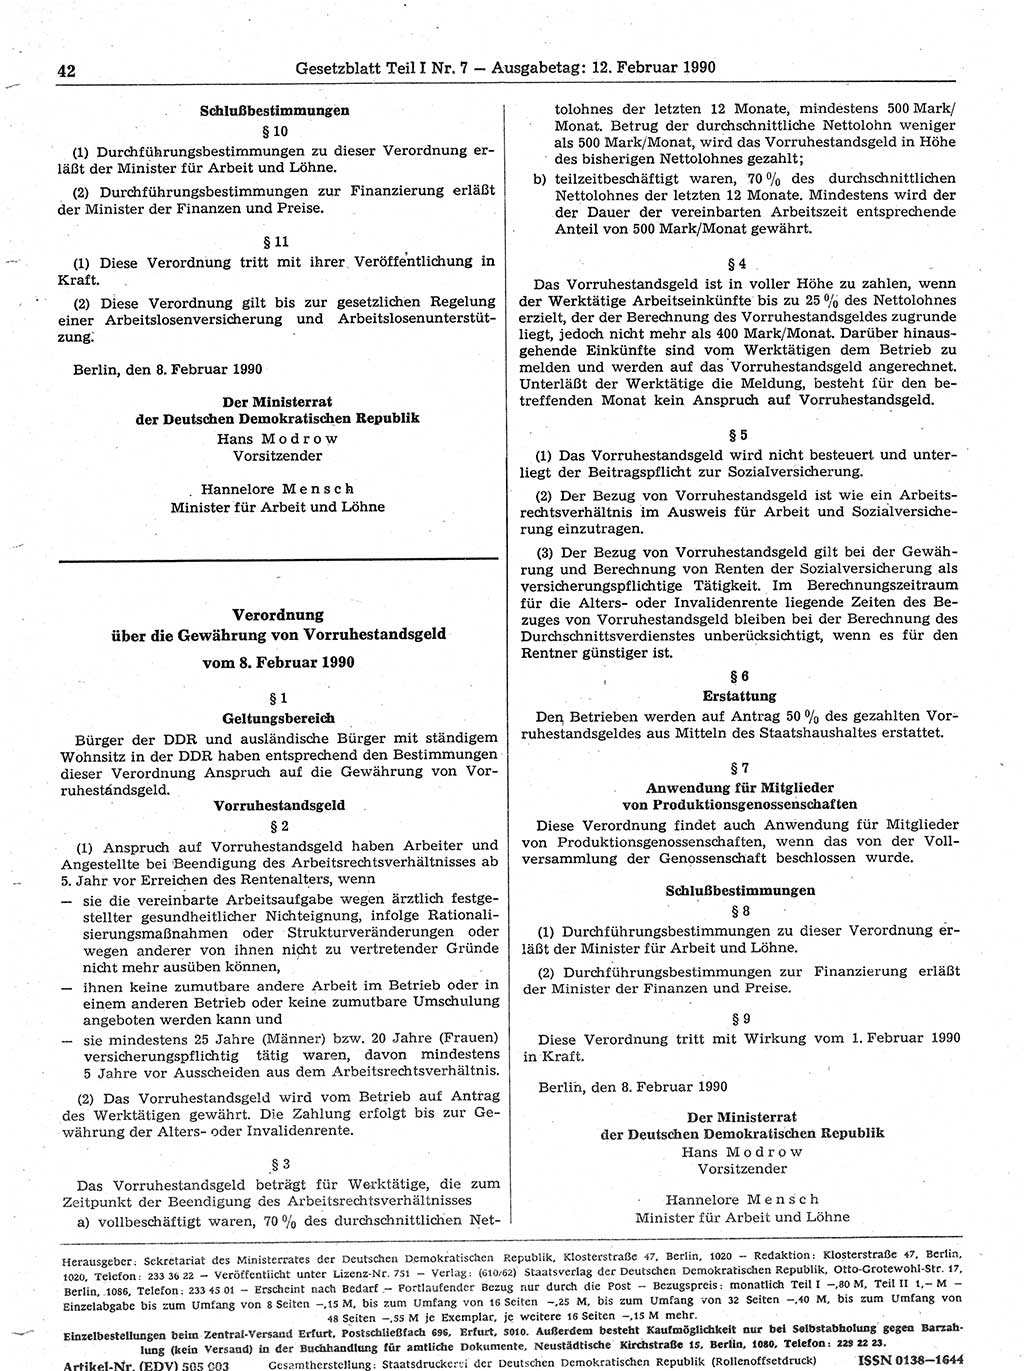 Gesetzblatt (GBl.) der Deutschen Demokratischen Republik (DDR) Teil Ⅰ 1990, Seite 42 (GBl. DDR Ⅰ 1990, S. 42)